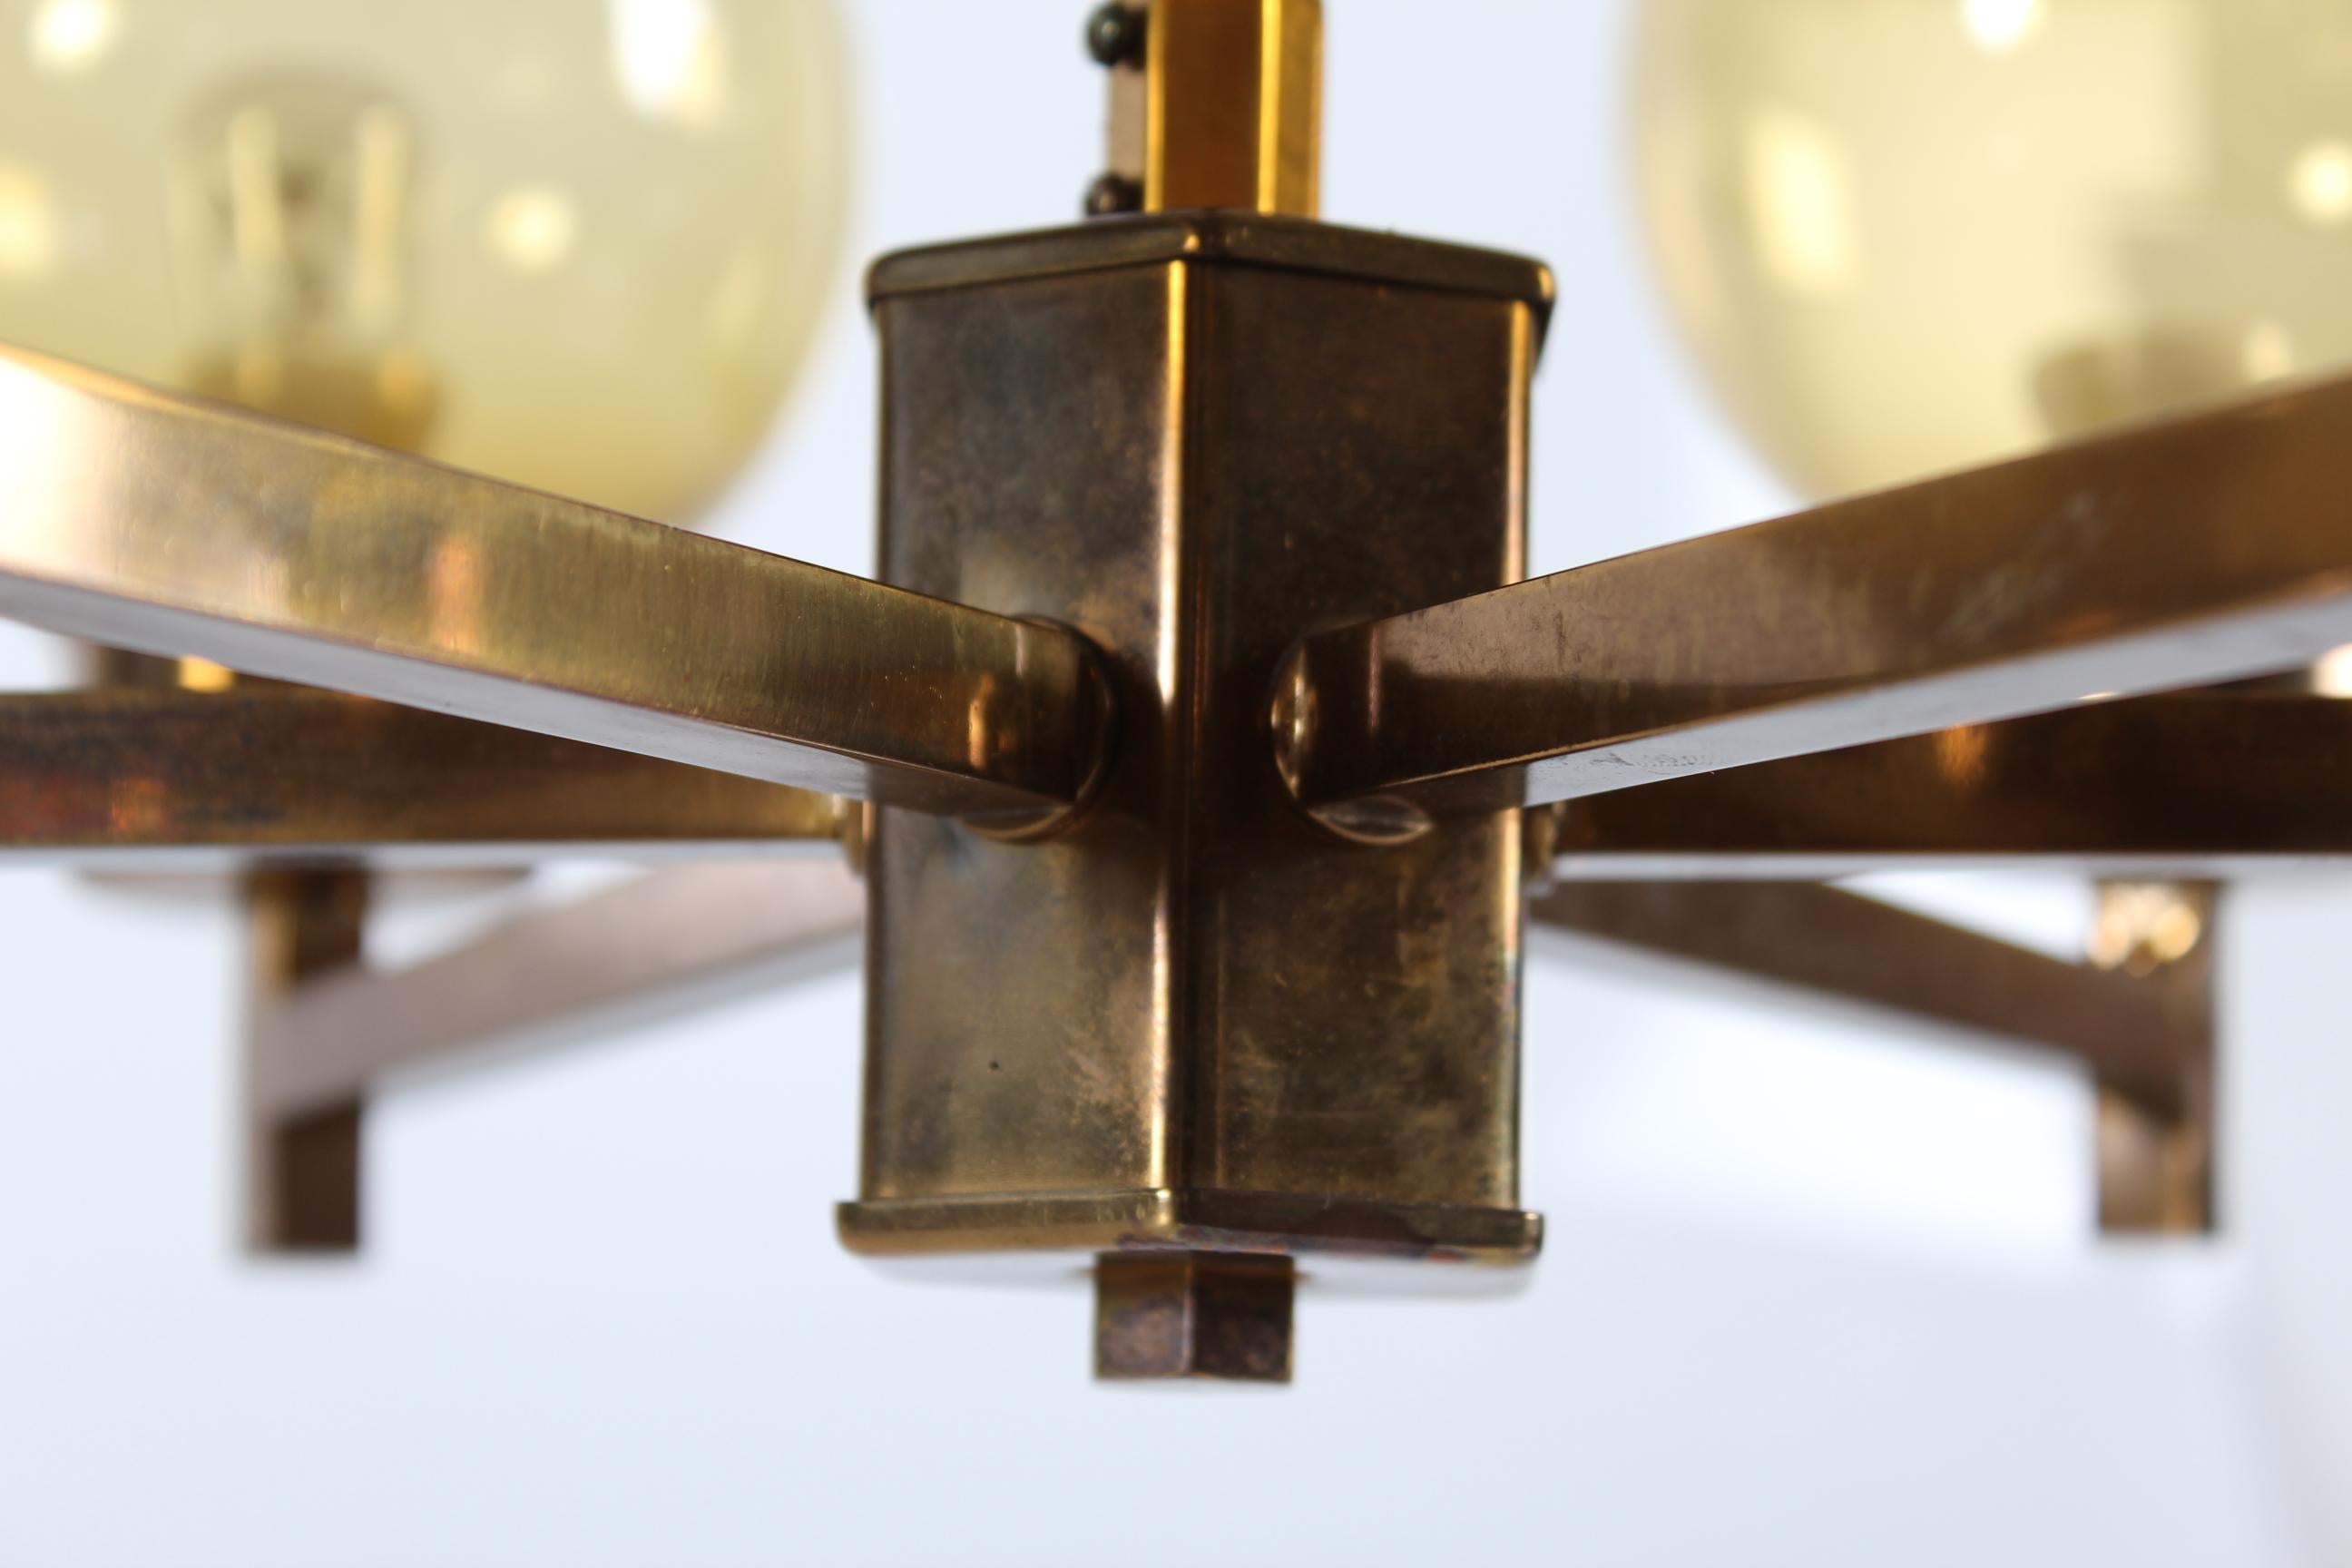 Lampadario a sei bracci in stile Hans-Agne Jakobsson.
Il lampadario ha una struttura in ottone patinato montata con 6 globi di vetro soffiato a bocca di colore ambrato.

Sulla cornice sono impresse le iniziali G.K.

La lampada da soffitto è in